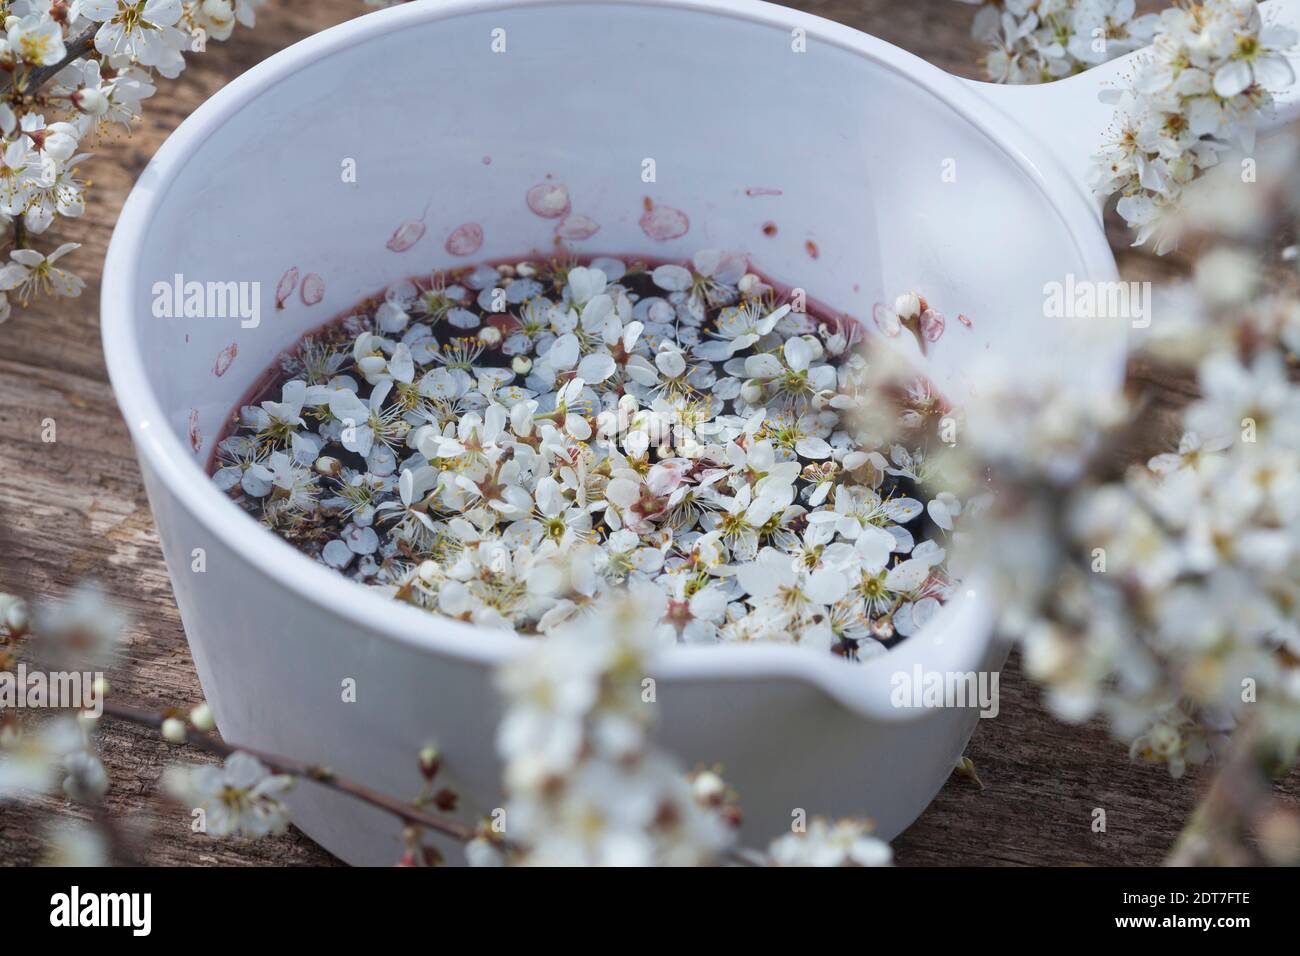 blackthorn, sloe (Prunus spinosa), self made sloe flower wine, red wine with sloe flowers, Germany Stock Photo